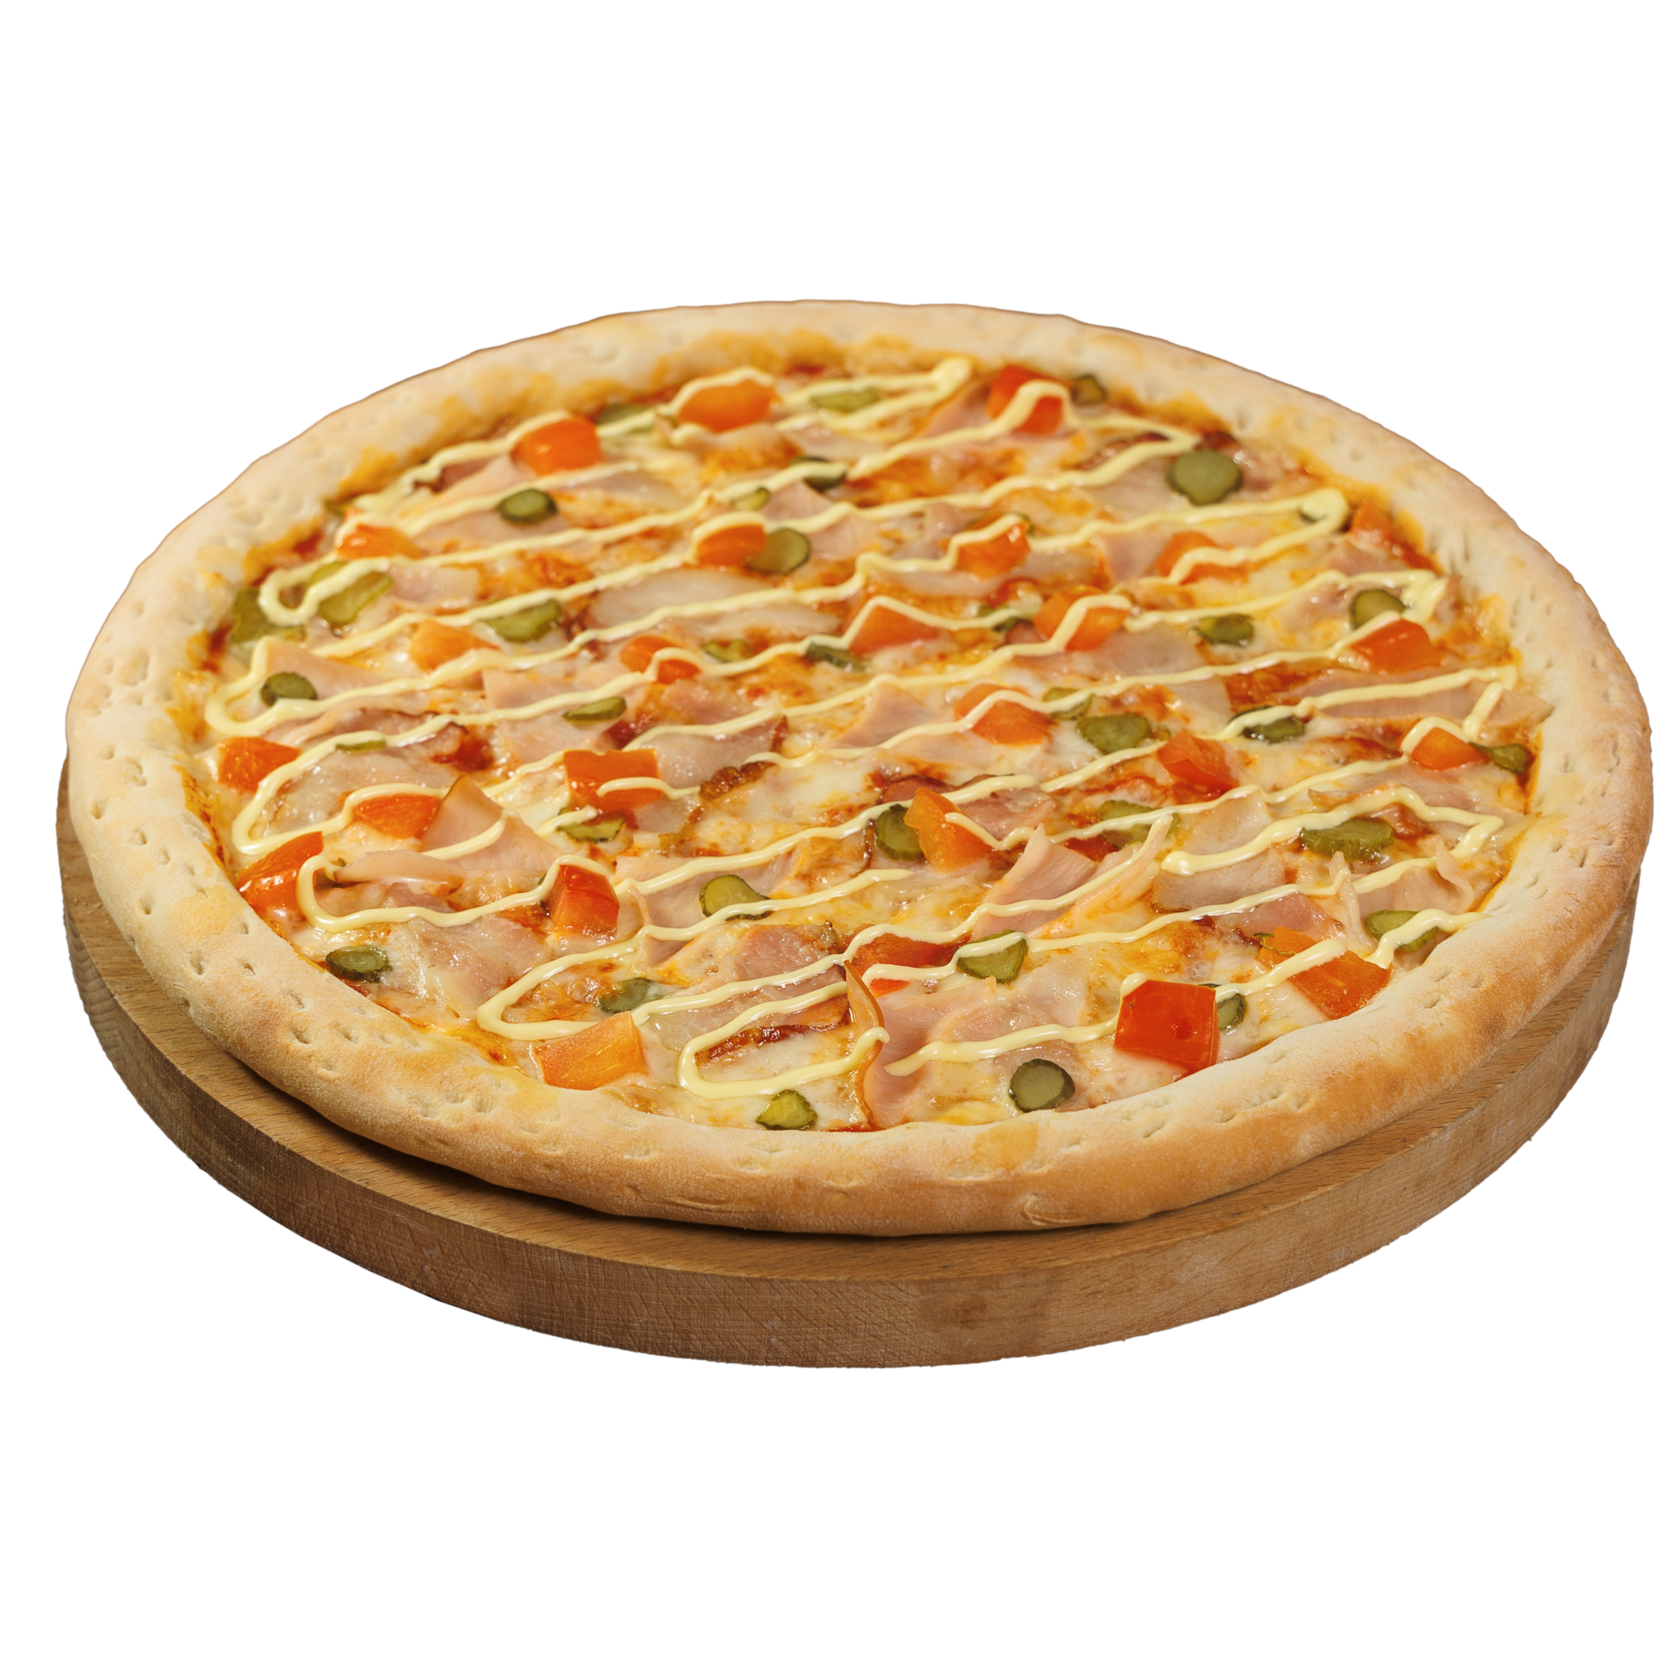 лучшая пицца в красноярске с доставкой рейтинг фото 19